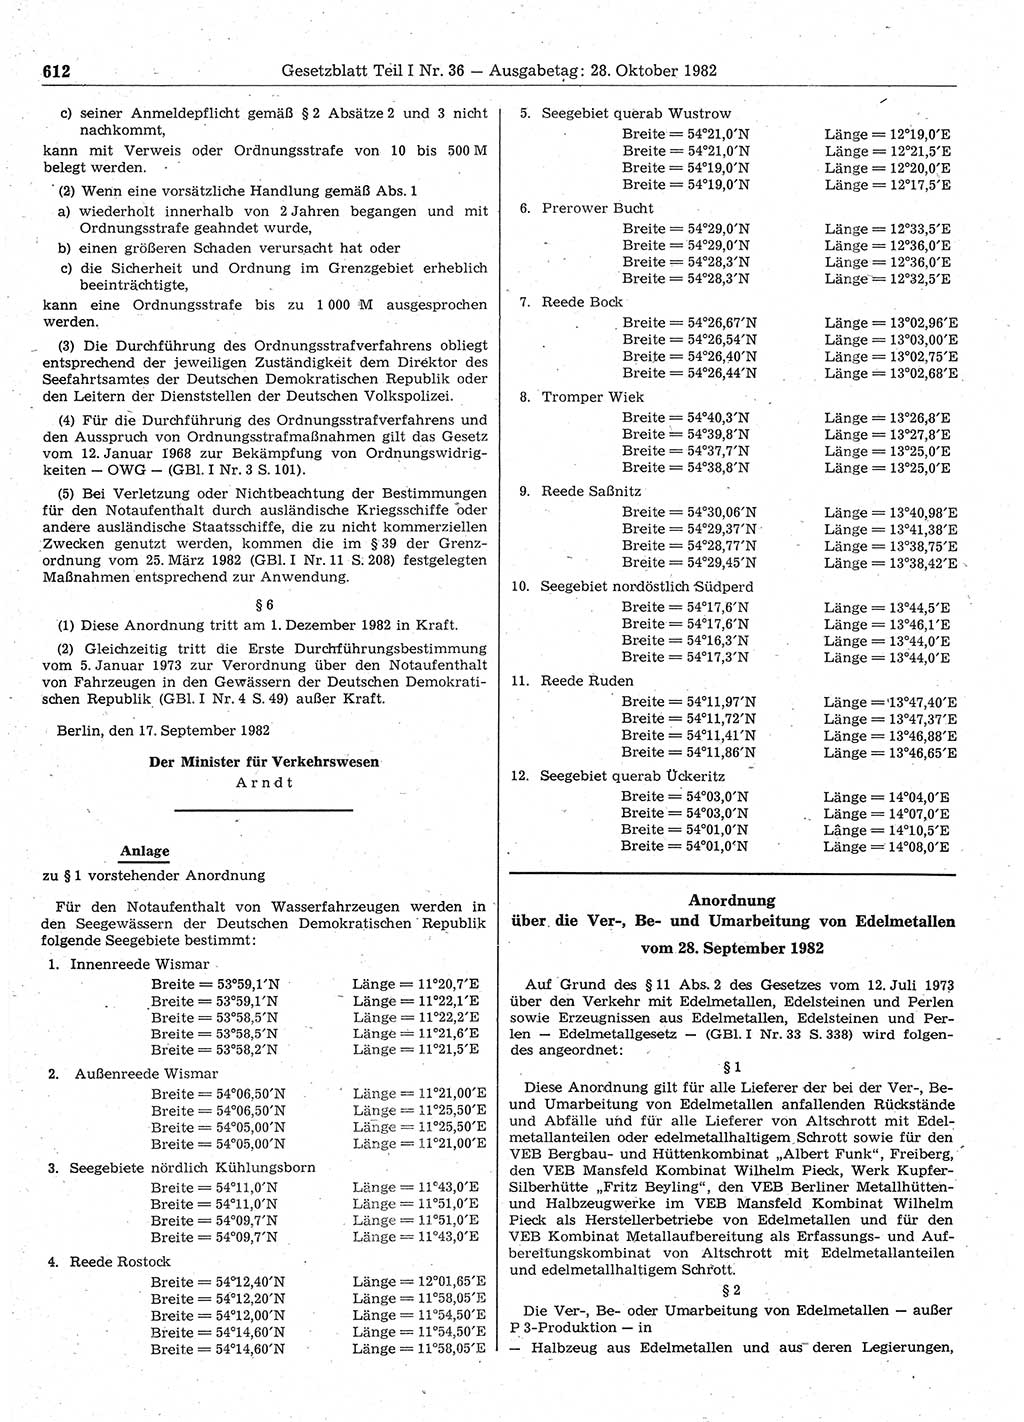 Gesetzblatt (GBl.) der Deutschen Demokratischen Republik (DDR) Teil Ⅰ 1982, Seite 612 (GBl. DDR Ⅰ 1982, S. 612)